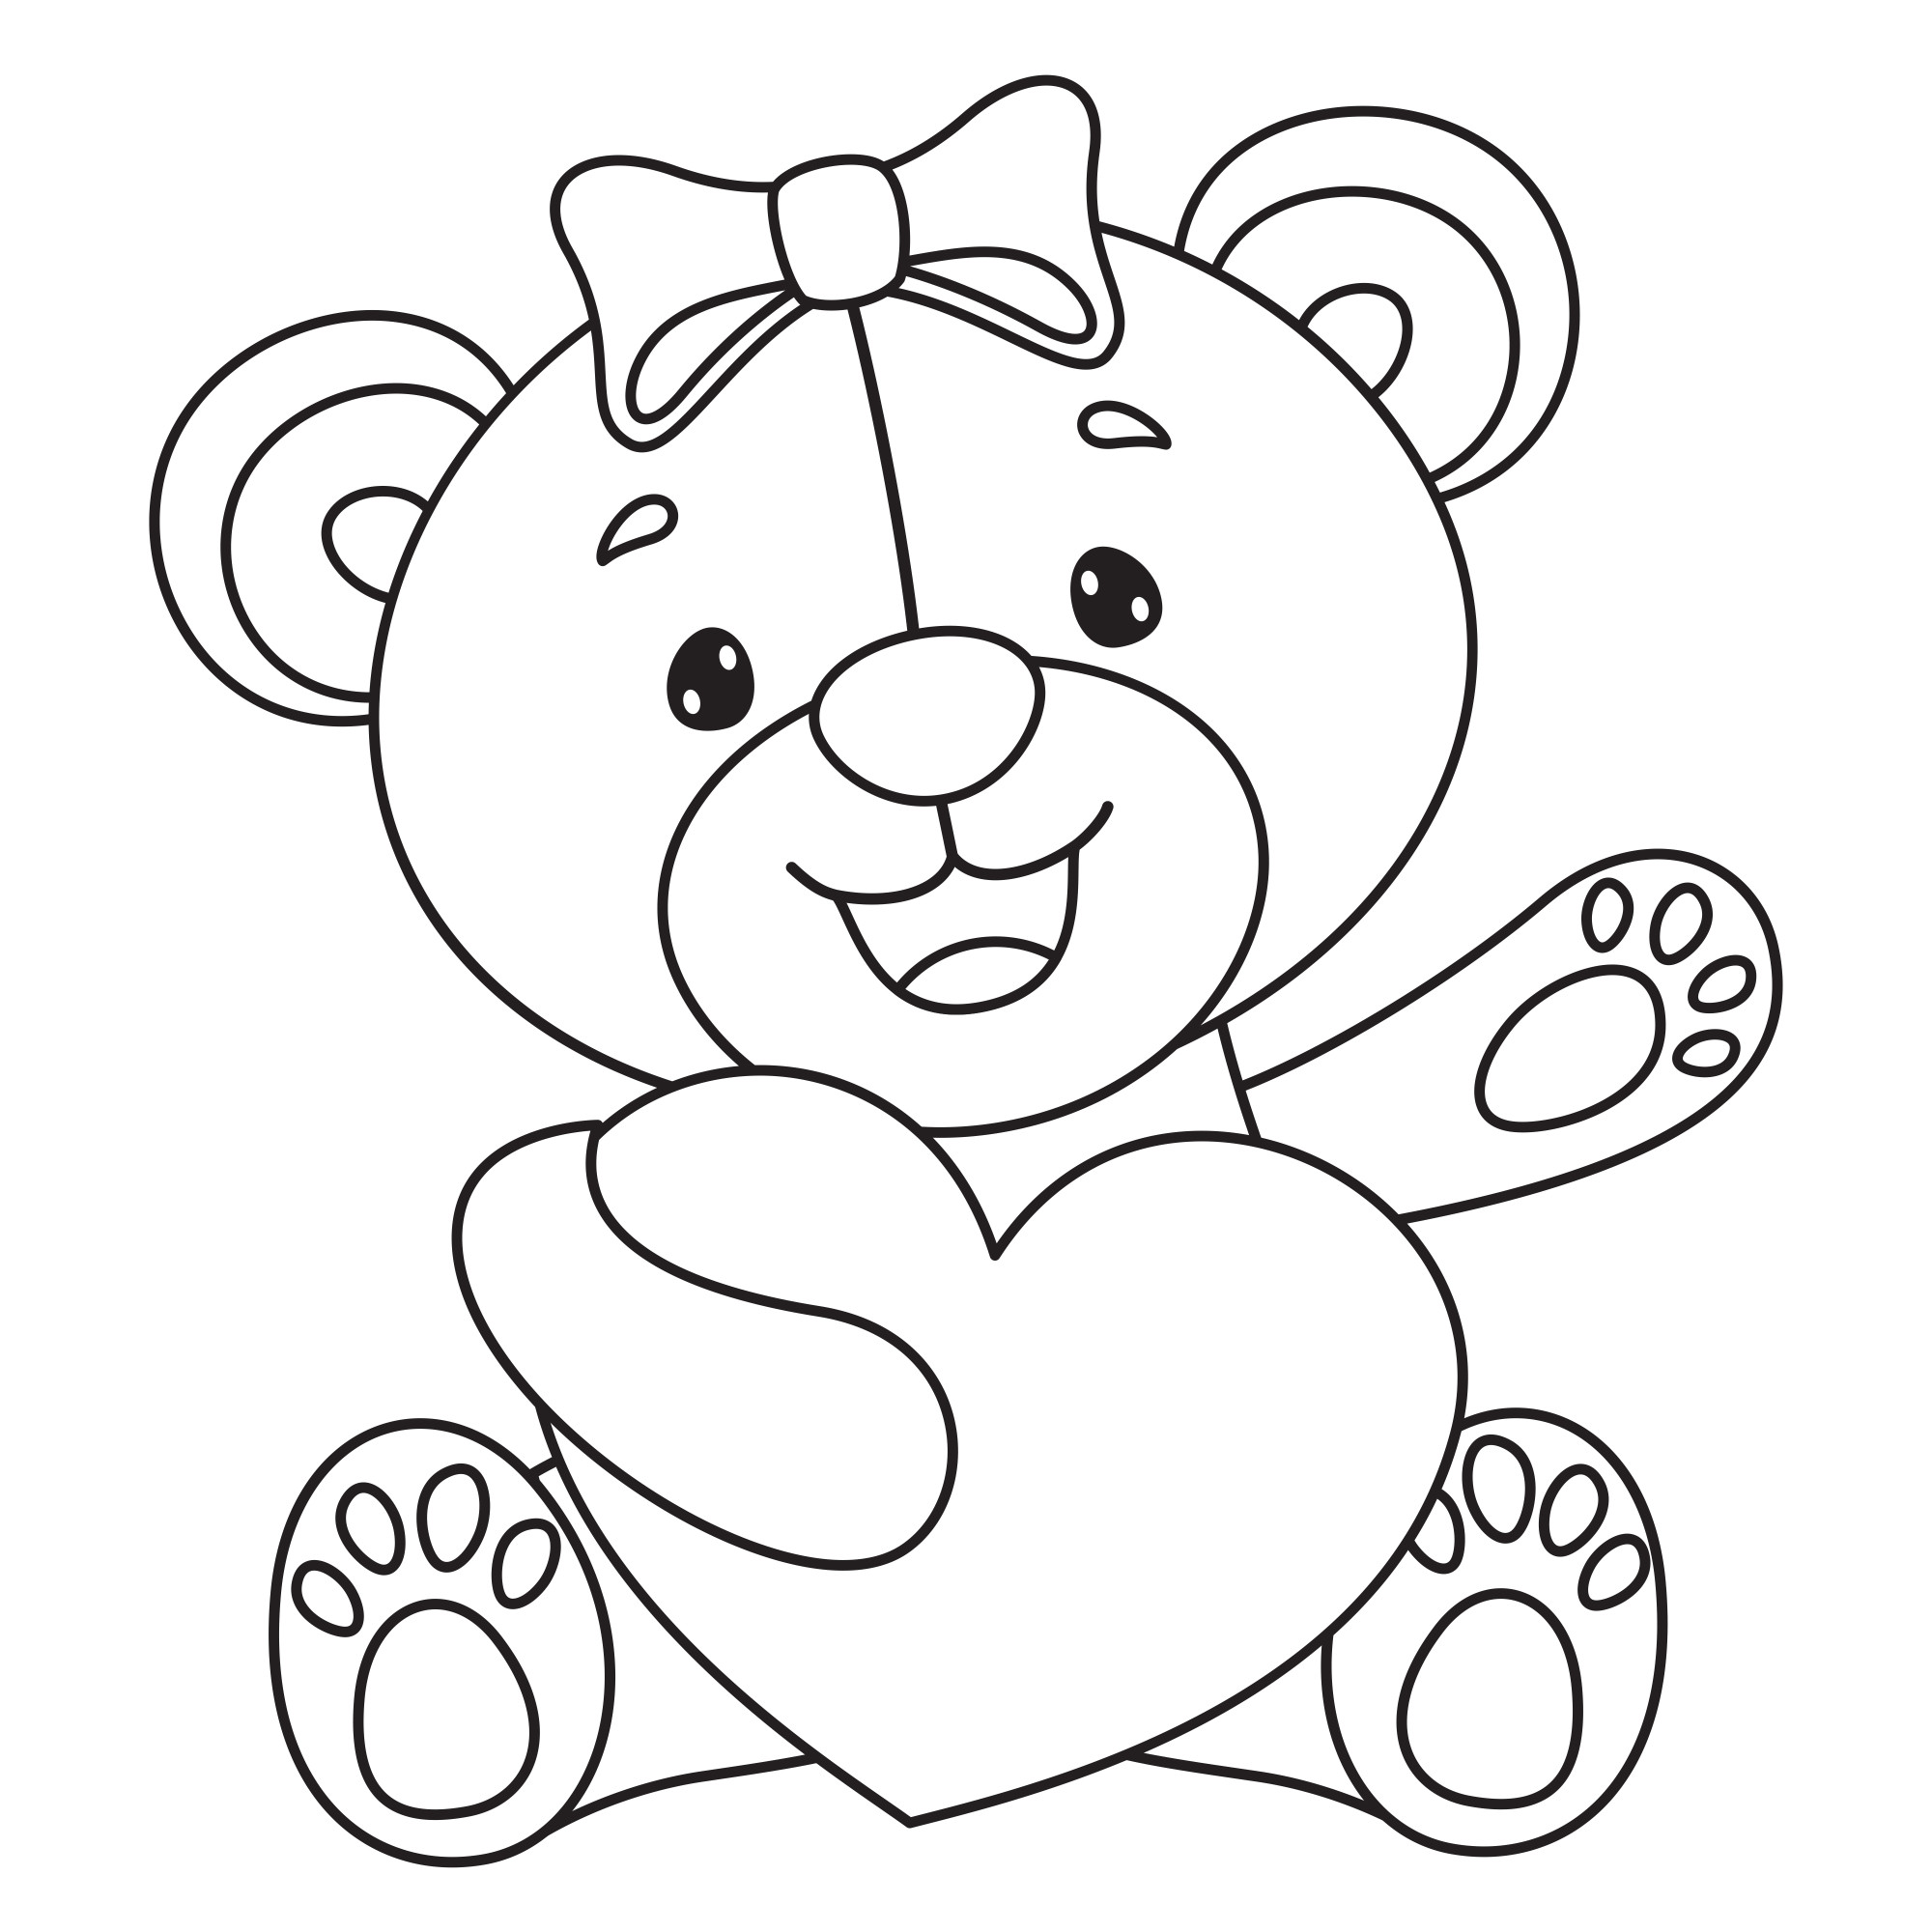 Раскраска для детей: маленькая медведица с плюшевым сердечком